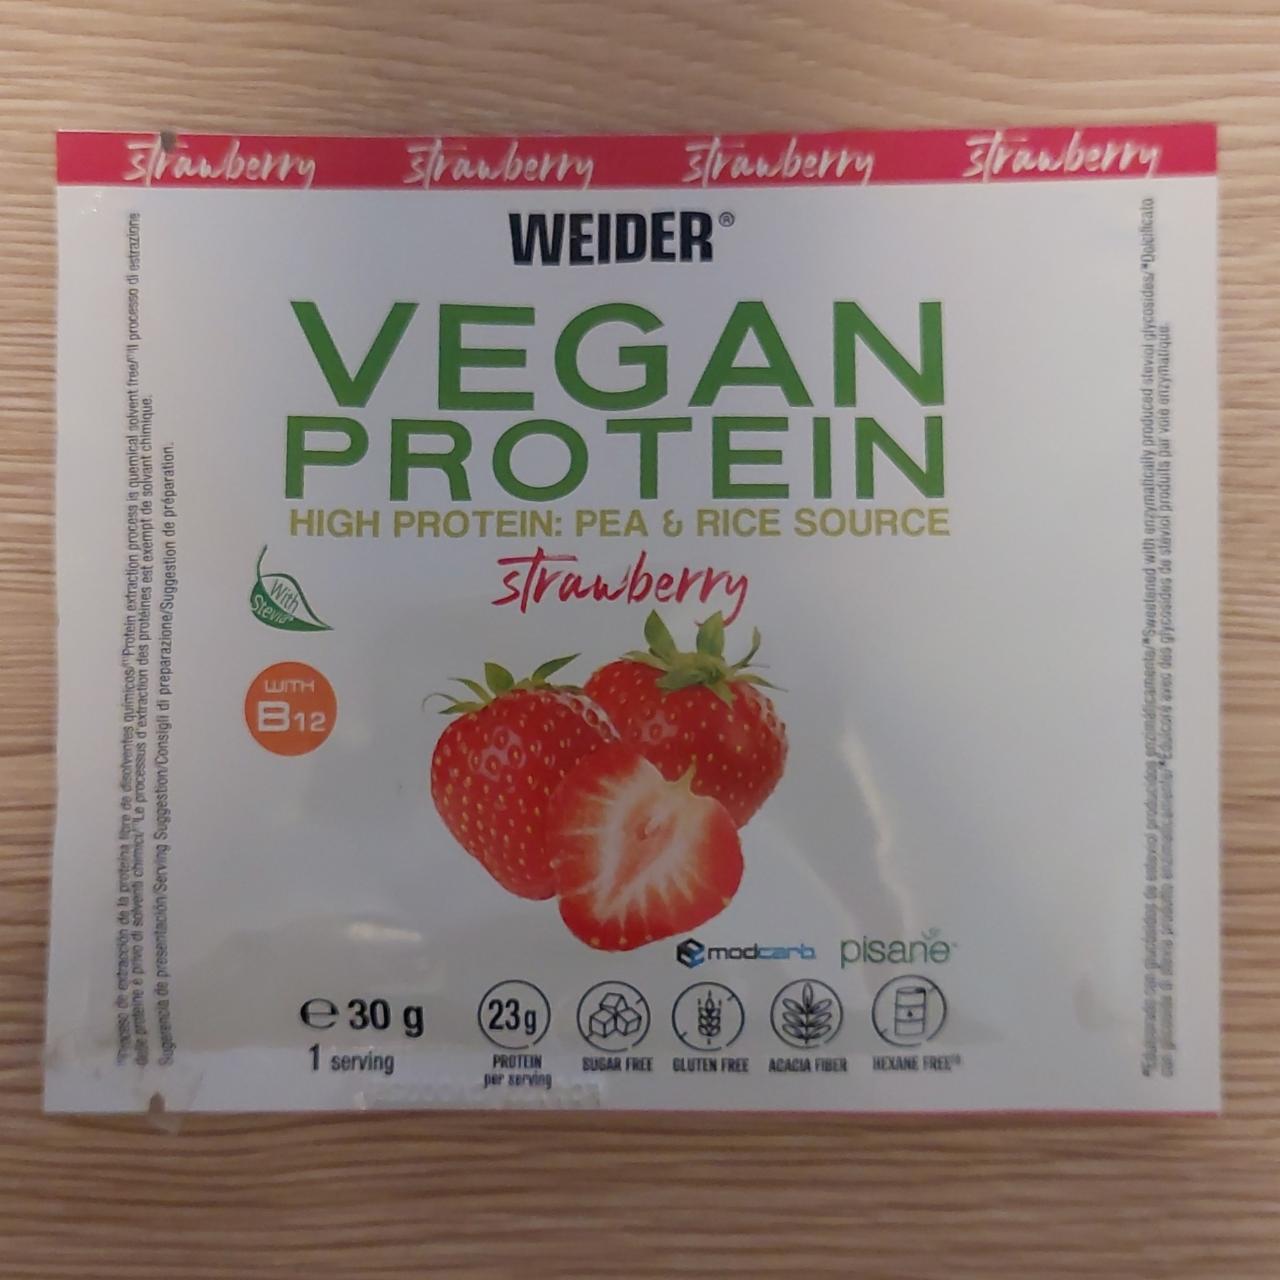 Fotografie - Vegan Protein Strawberry Weider